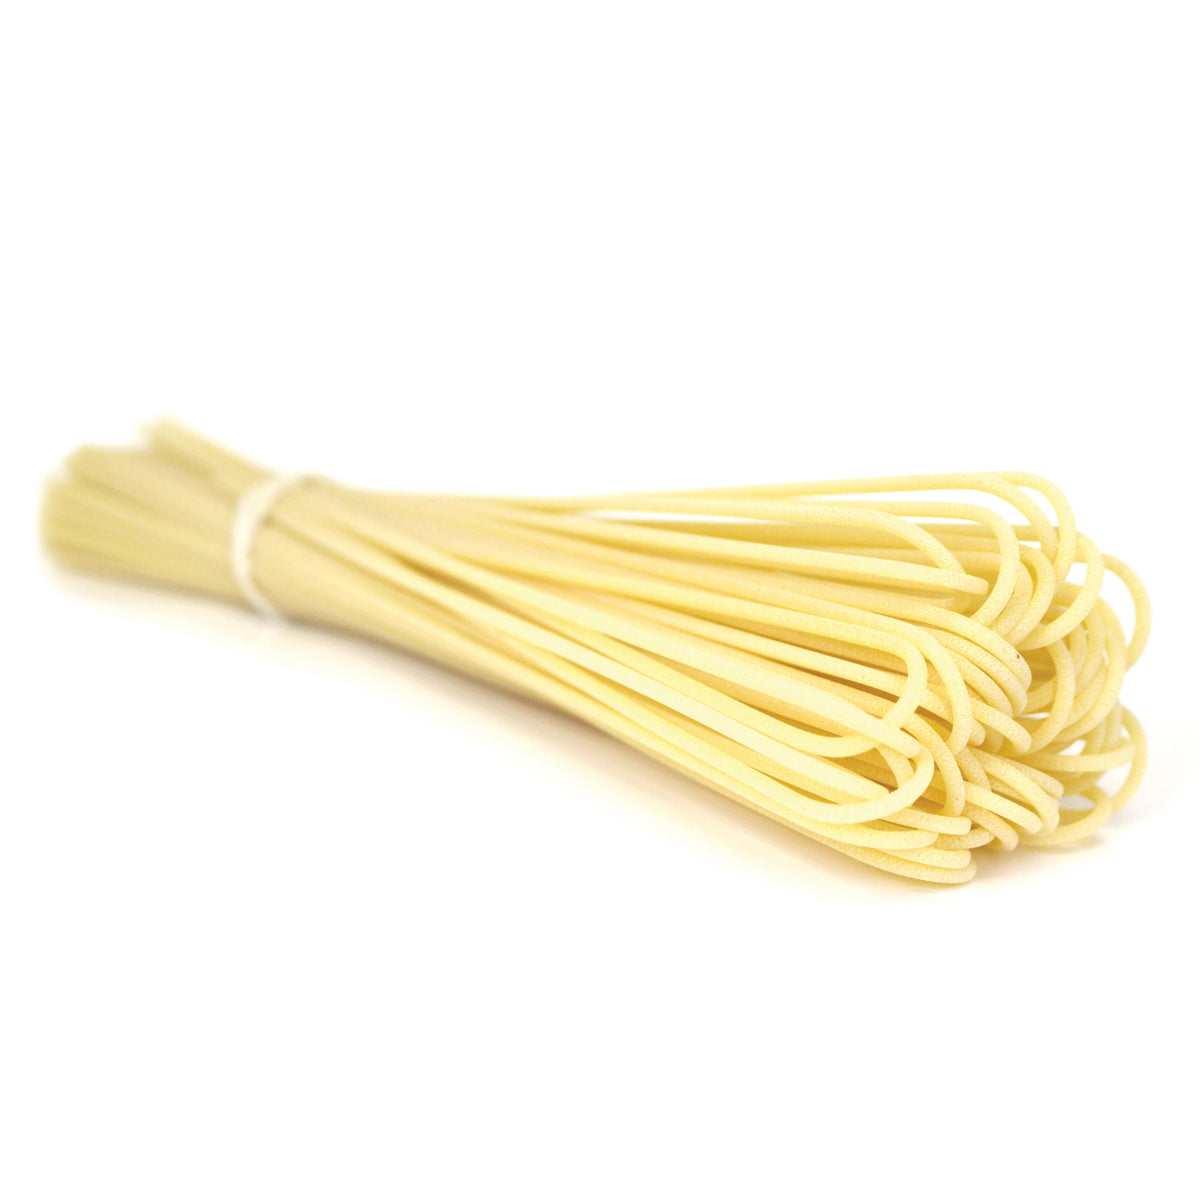 Organic Spaghetti alla Chitarra – Giusto Sapore